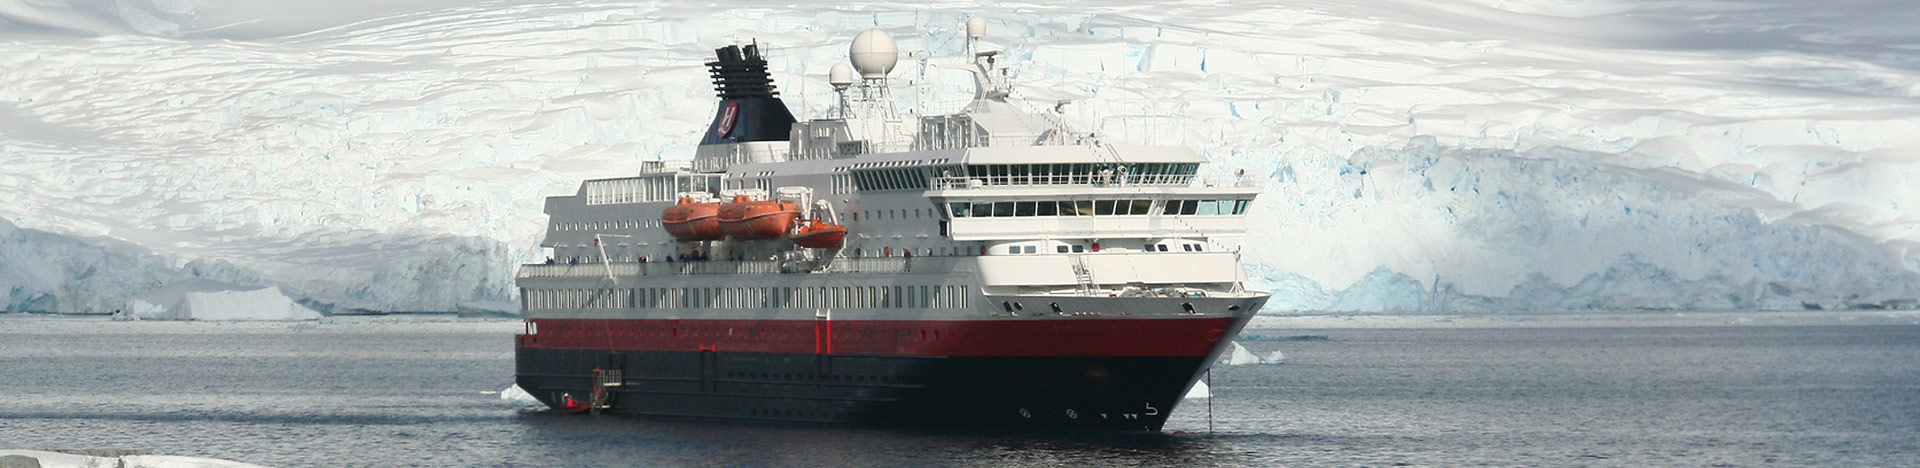 Hurtigrutenschiff vor Gletschereis